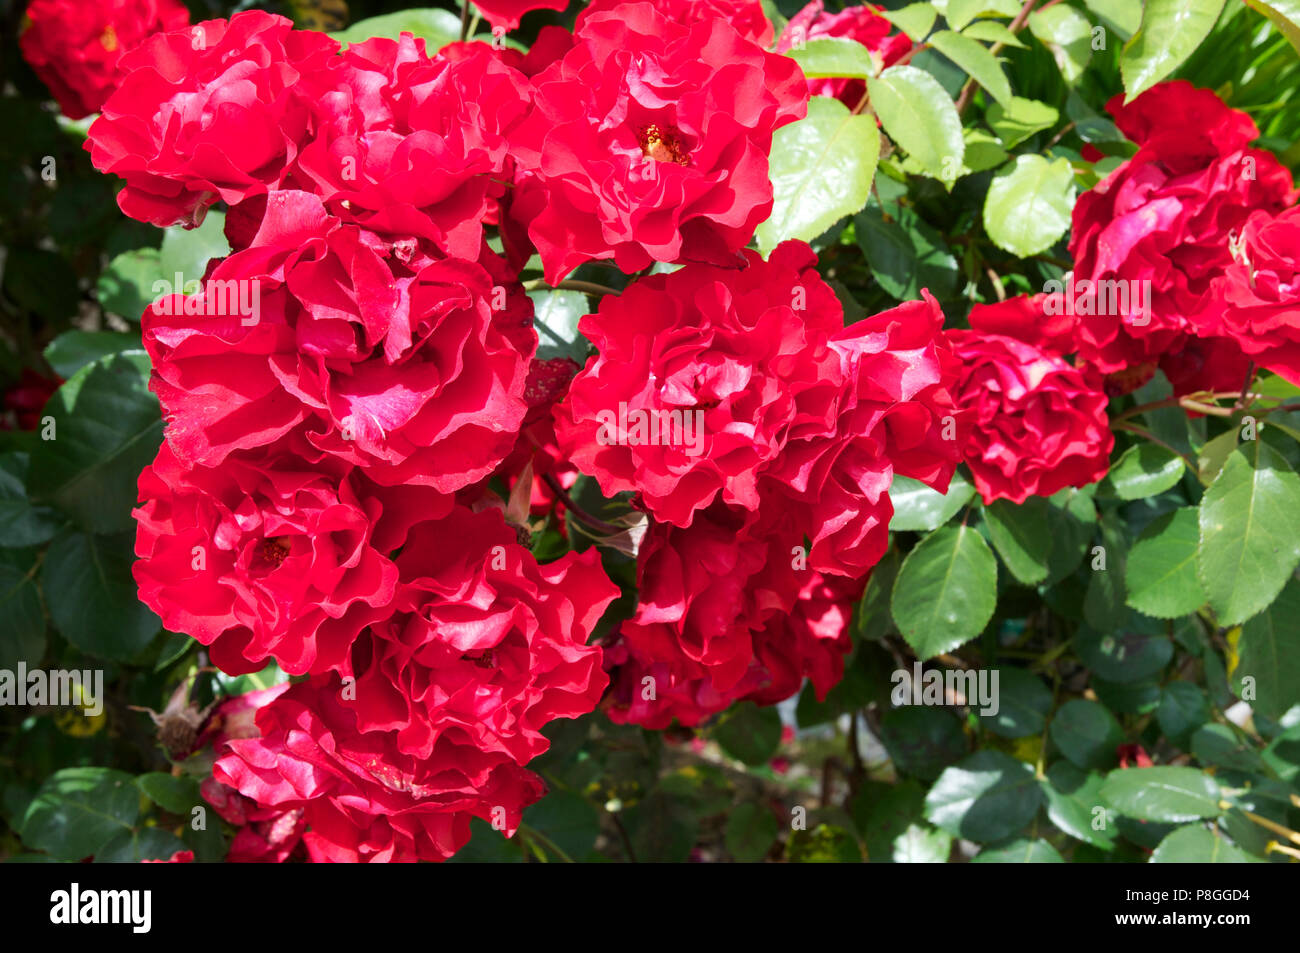 Bright red 'Sevilla' roses Stock Photo